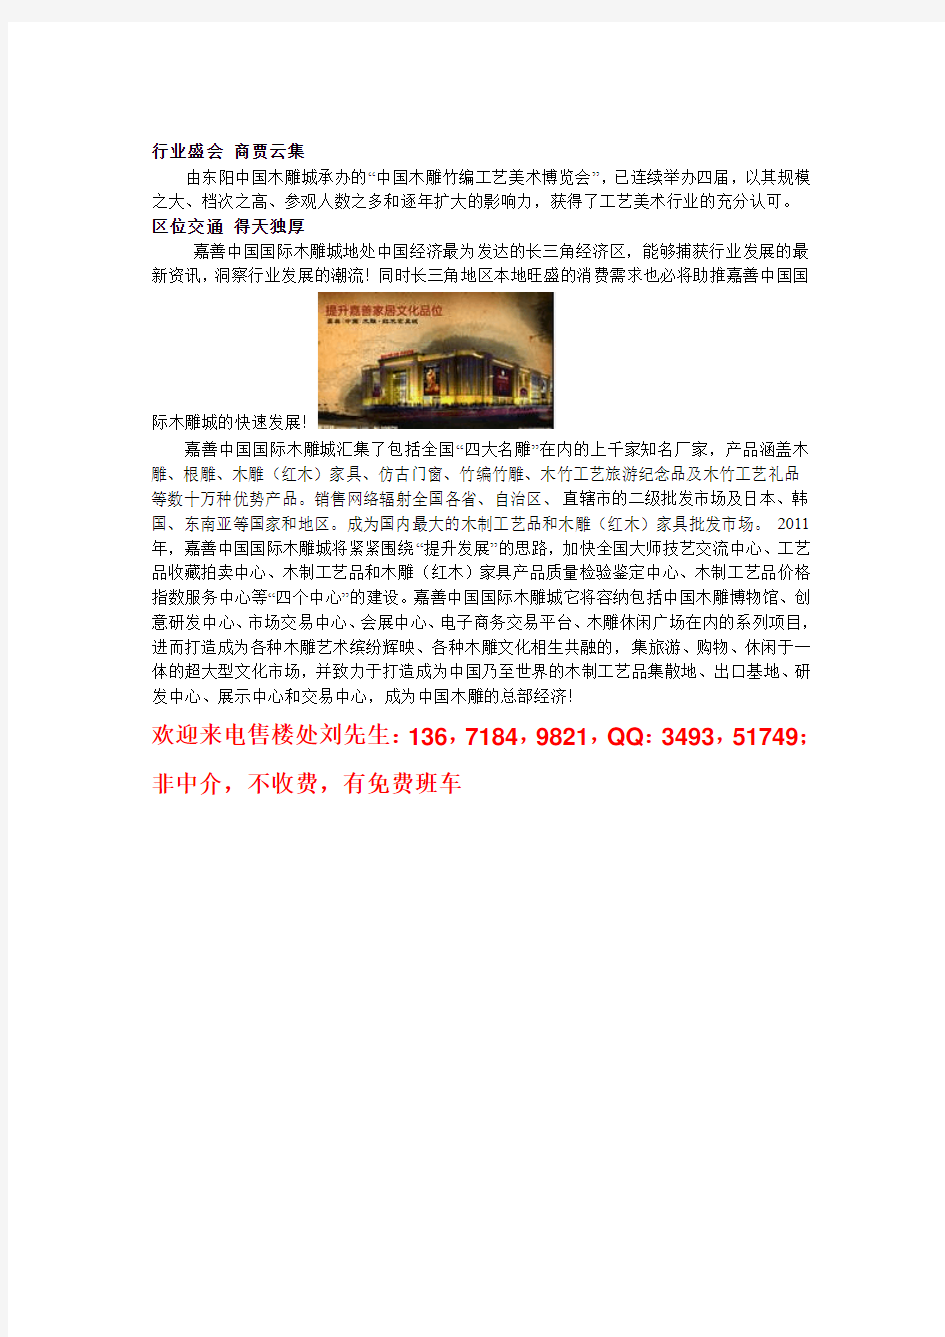 嘉善中国国际木雕城,最大的红木家具市场,总价10万起,全国销售最大市场